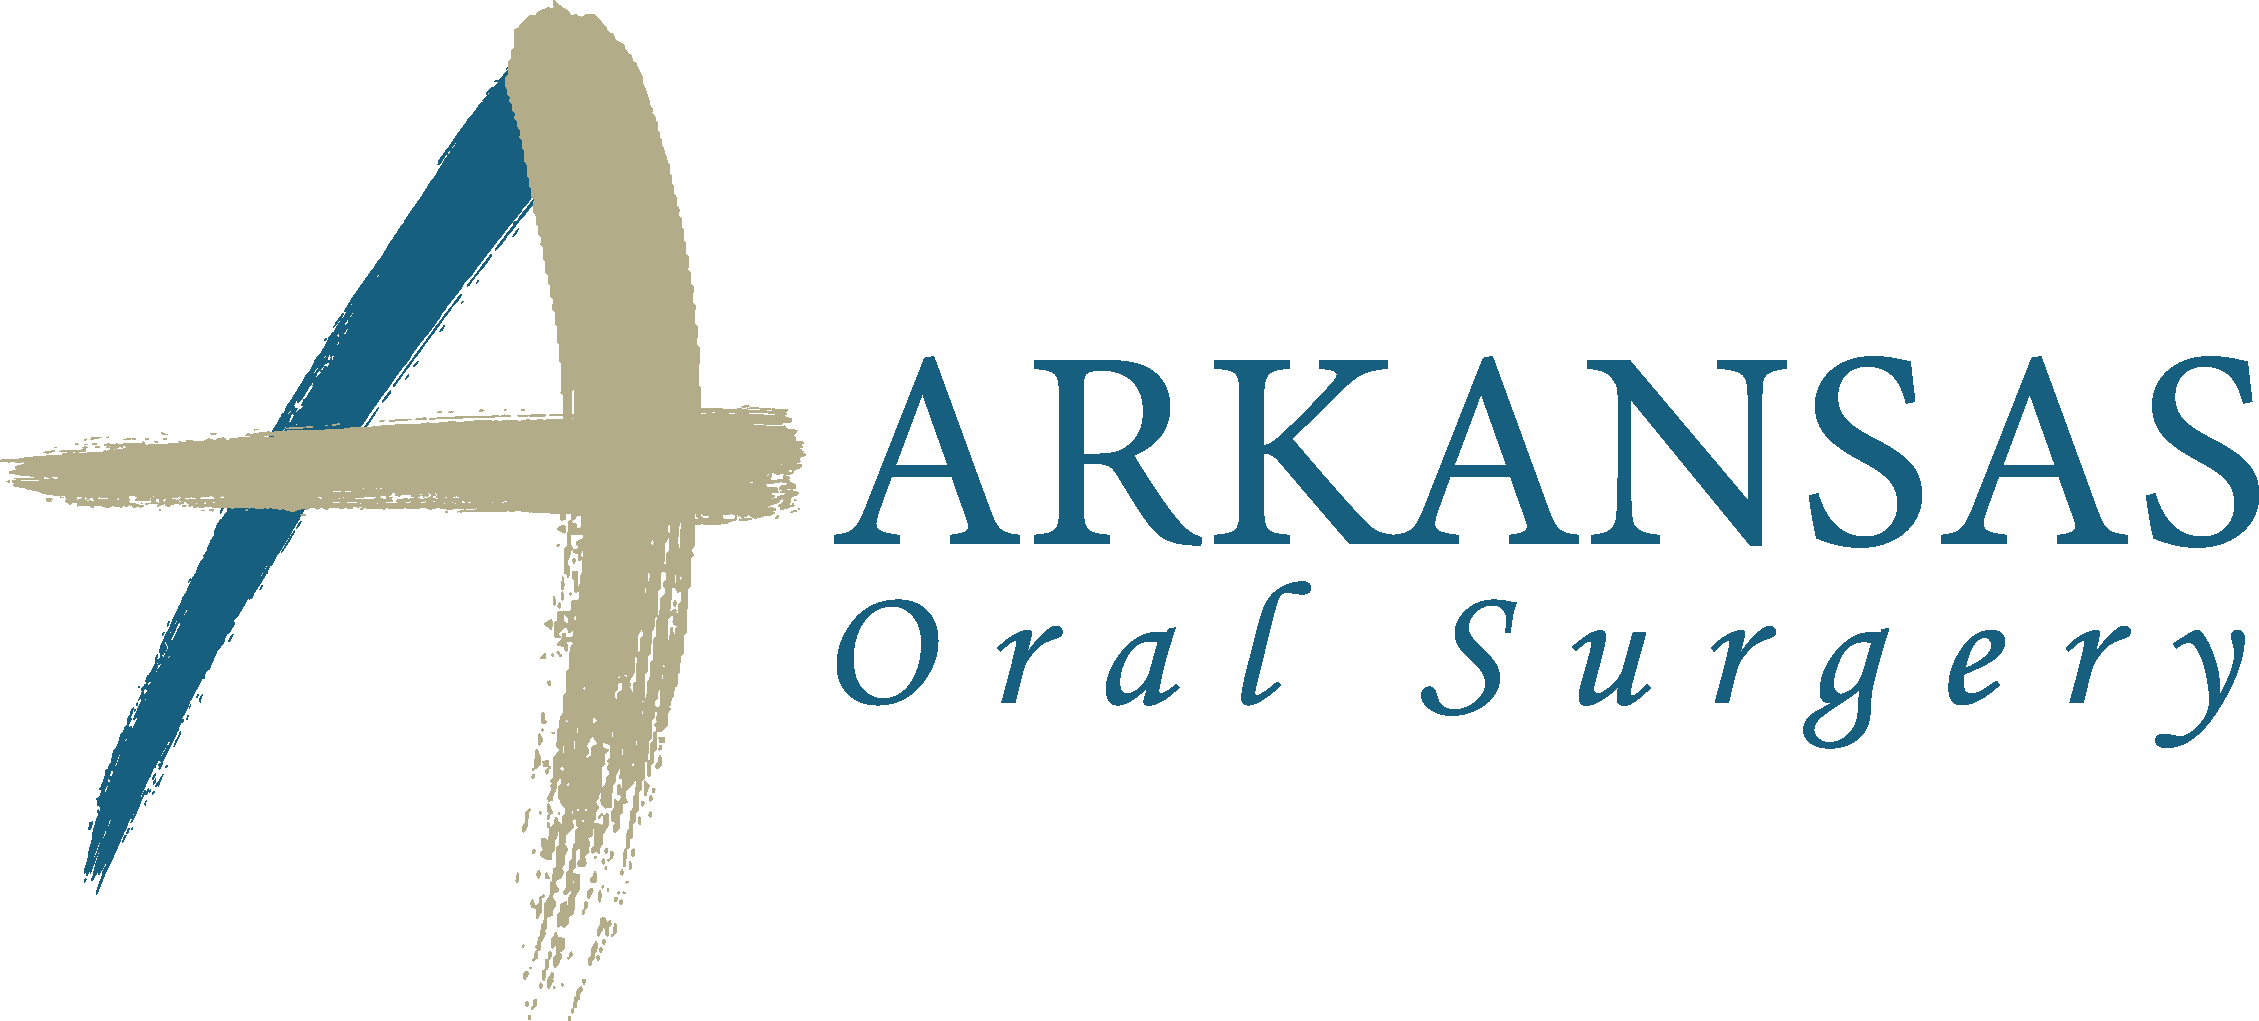 Arkansas Oral Surgery Logo